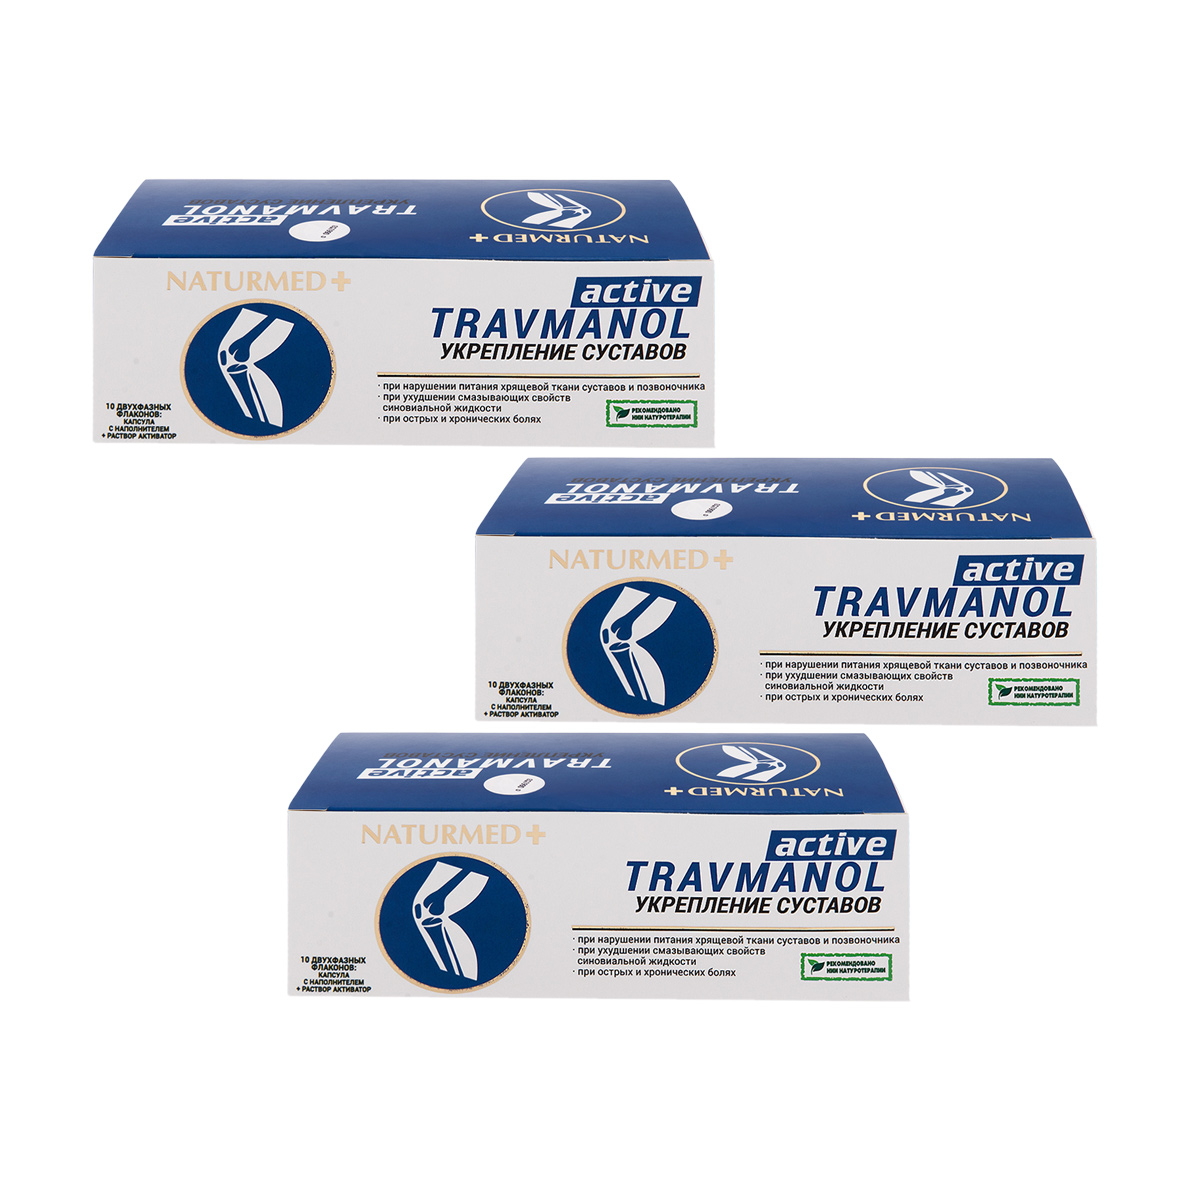 «Травманол актив» NaturMed, капсулы в среде-активаторе (3 уп. по 10 капсул по 500 мг), БАДы, БАДы для суставов